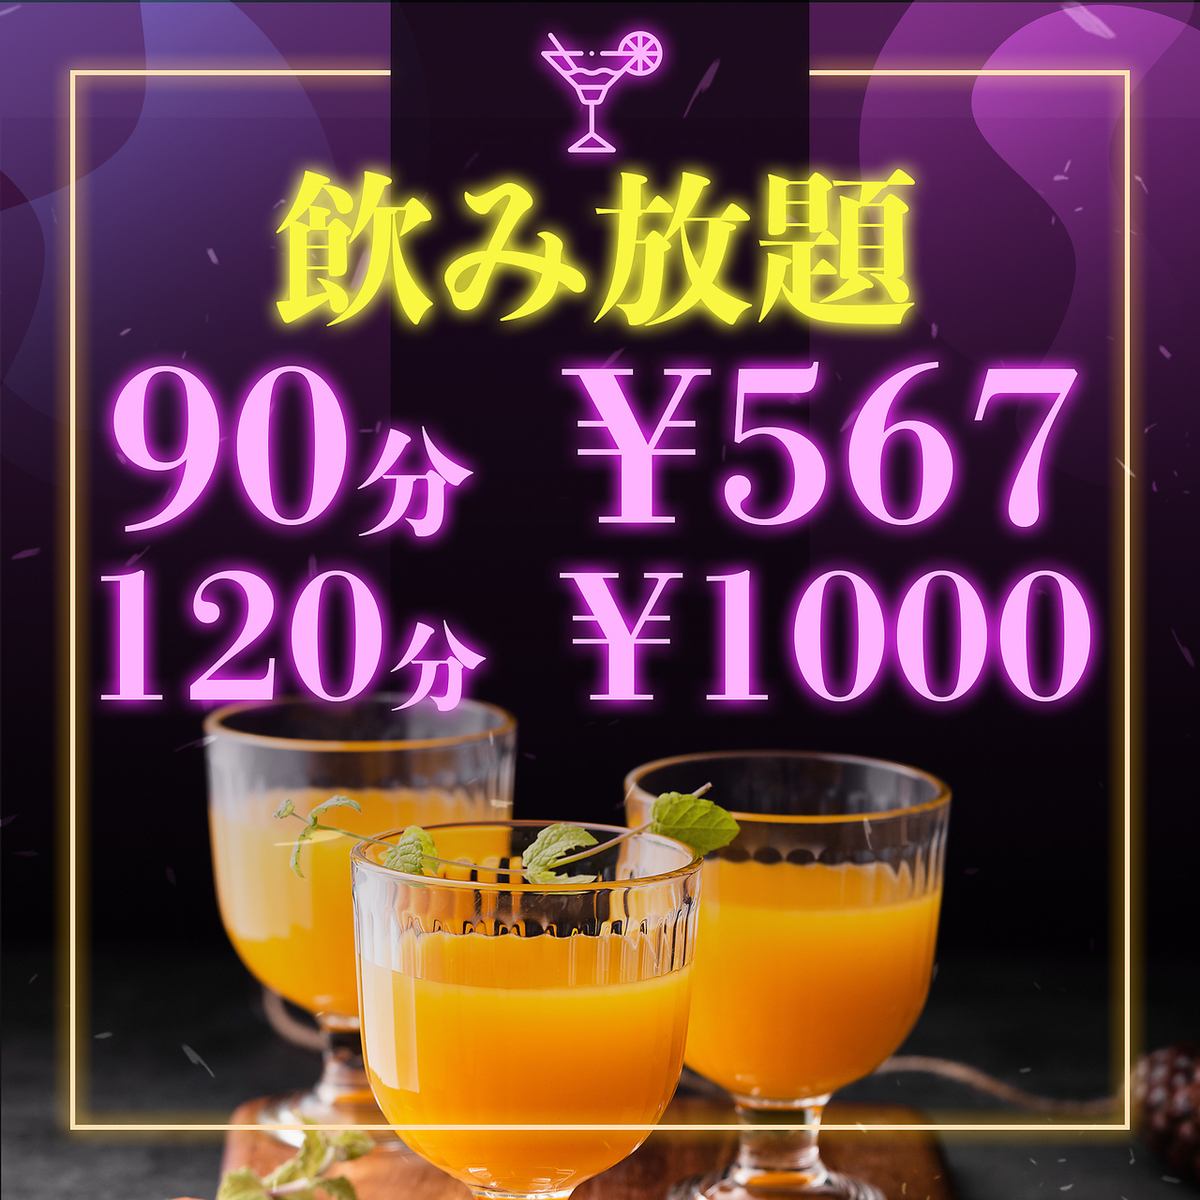 【有包间】90分钟无限畅饮567日元、120分钟无限畅饮1000日元♪